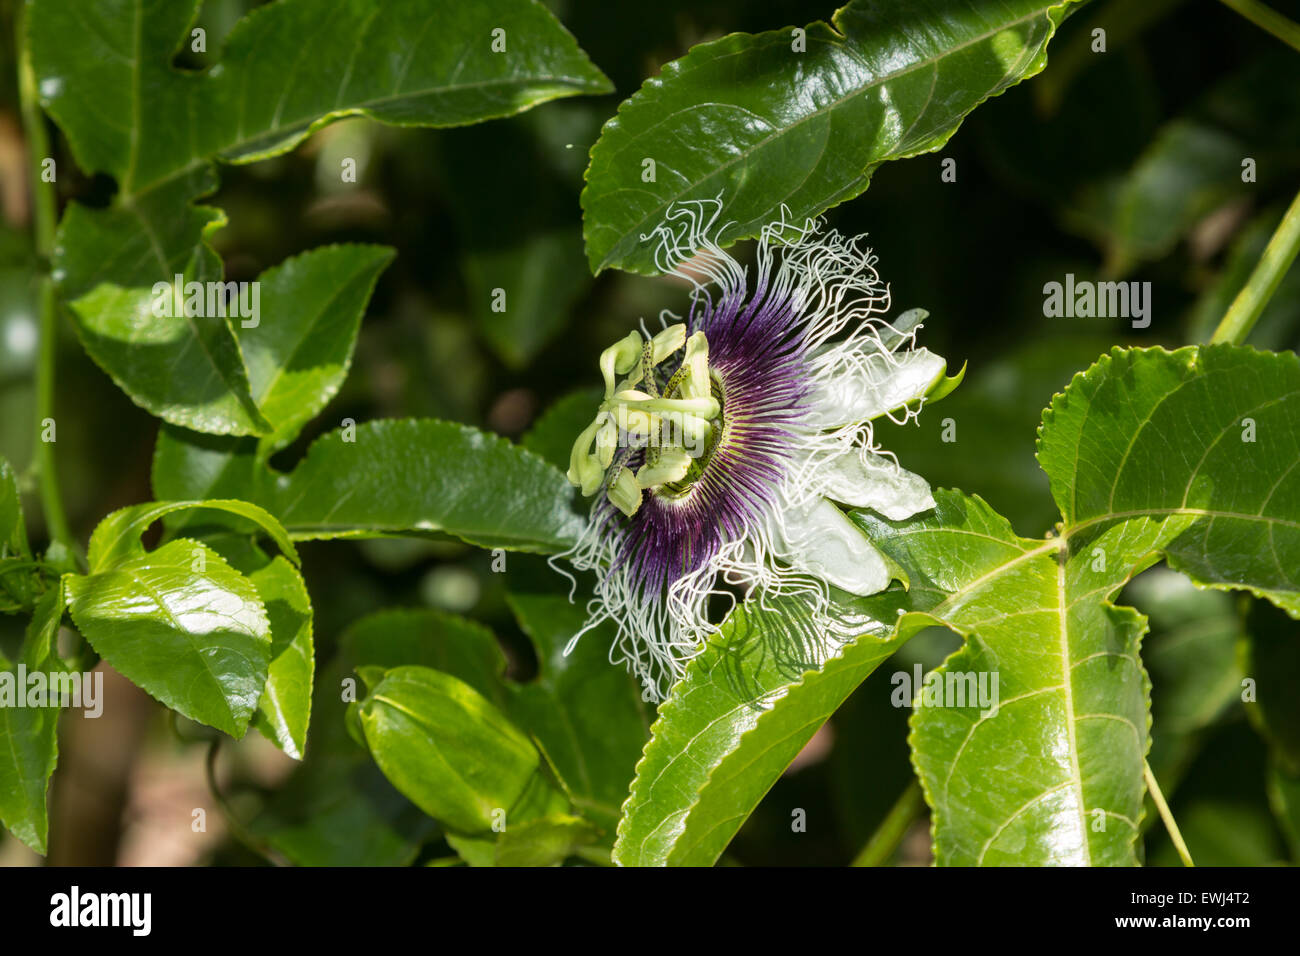 Viola e bianco di frutti di passiflora, Passiflora incarnata, bracci sul verde della vigna in estate Foto Stock